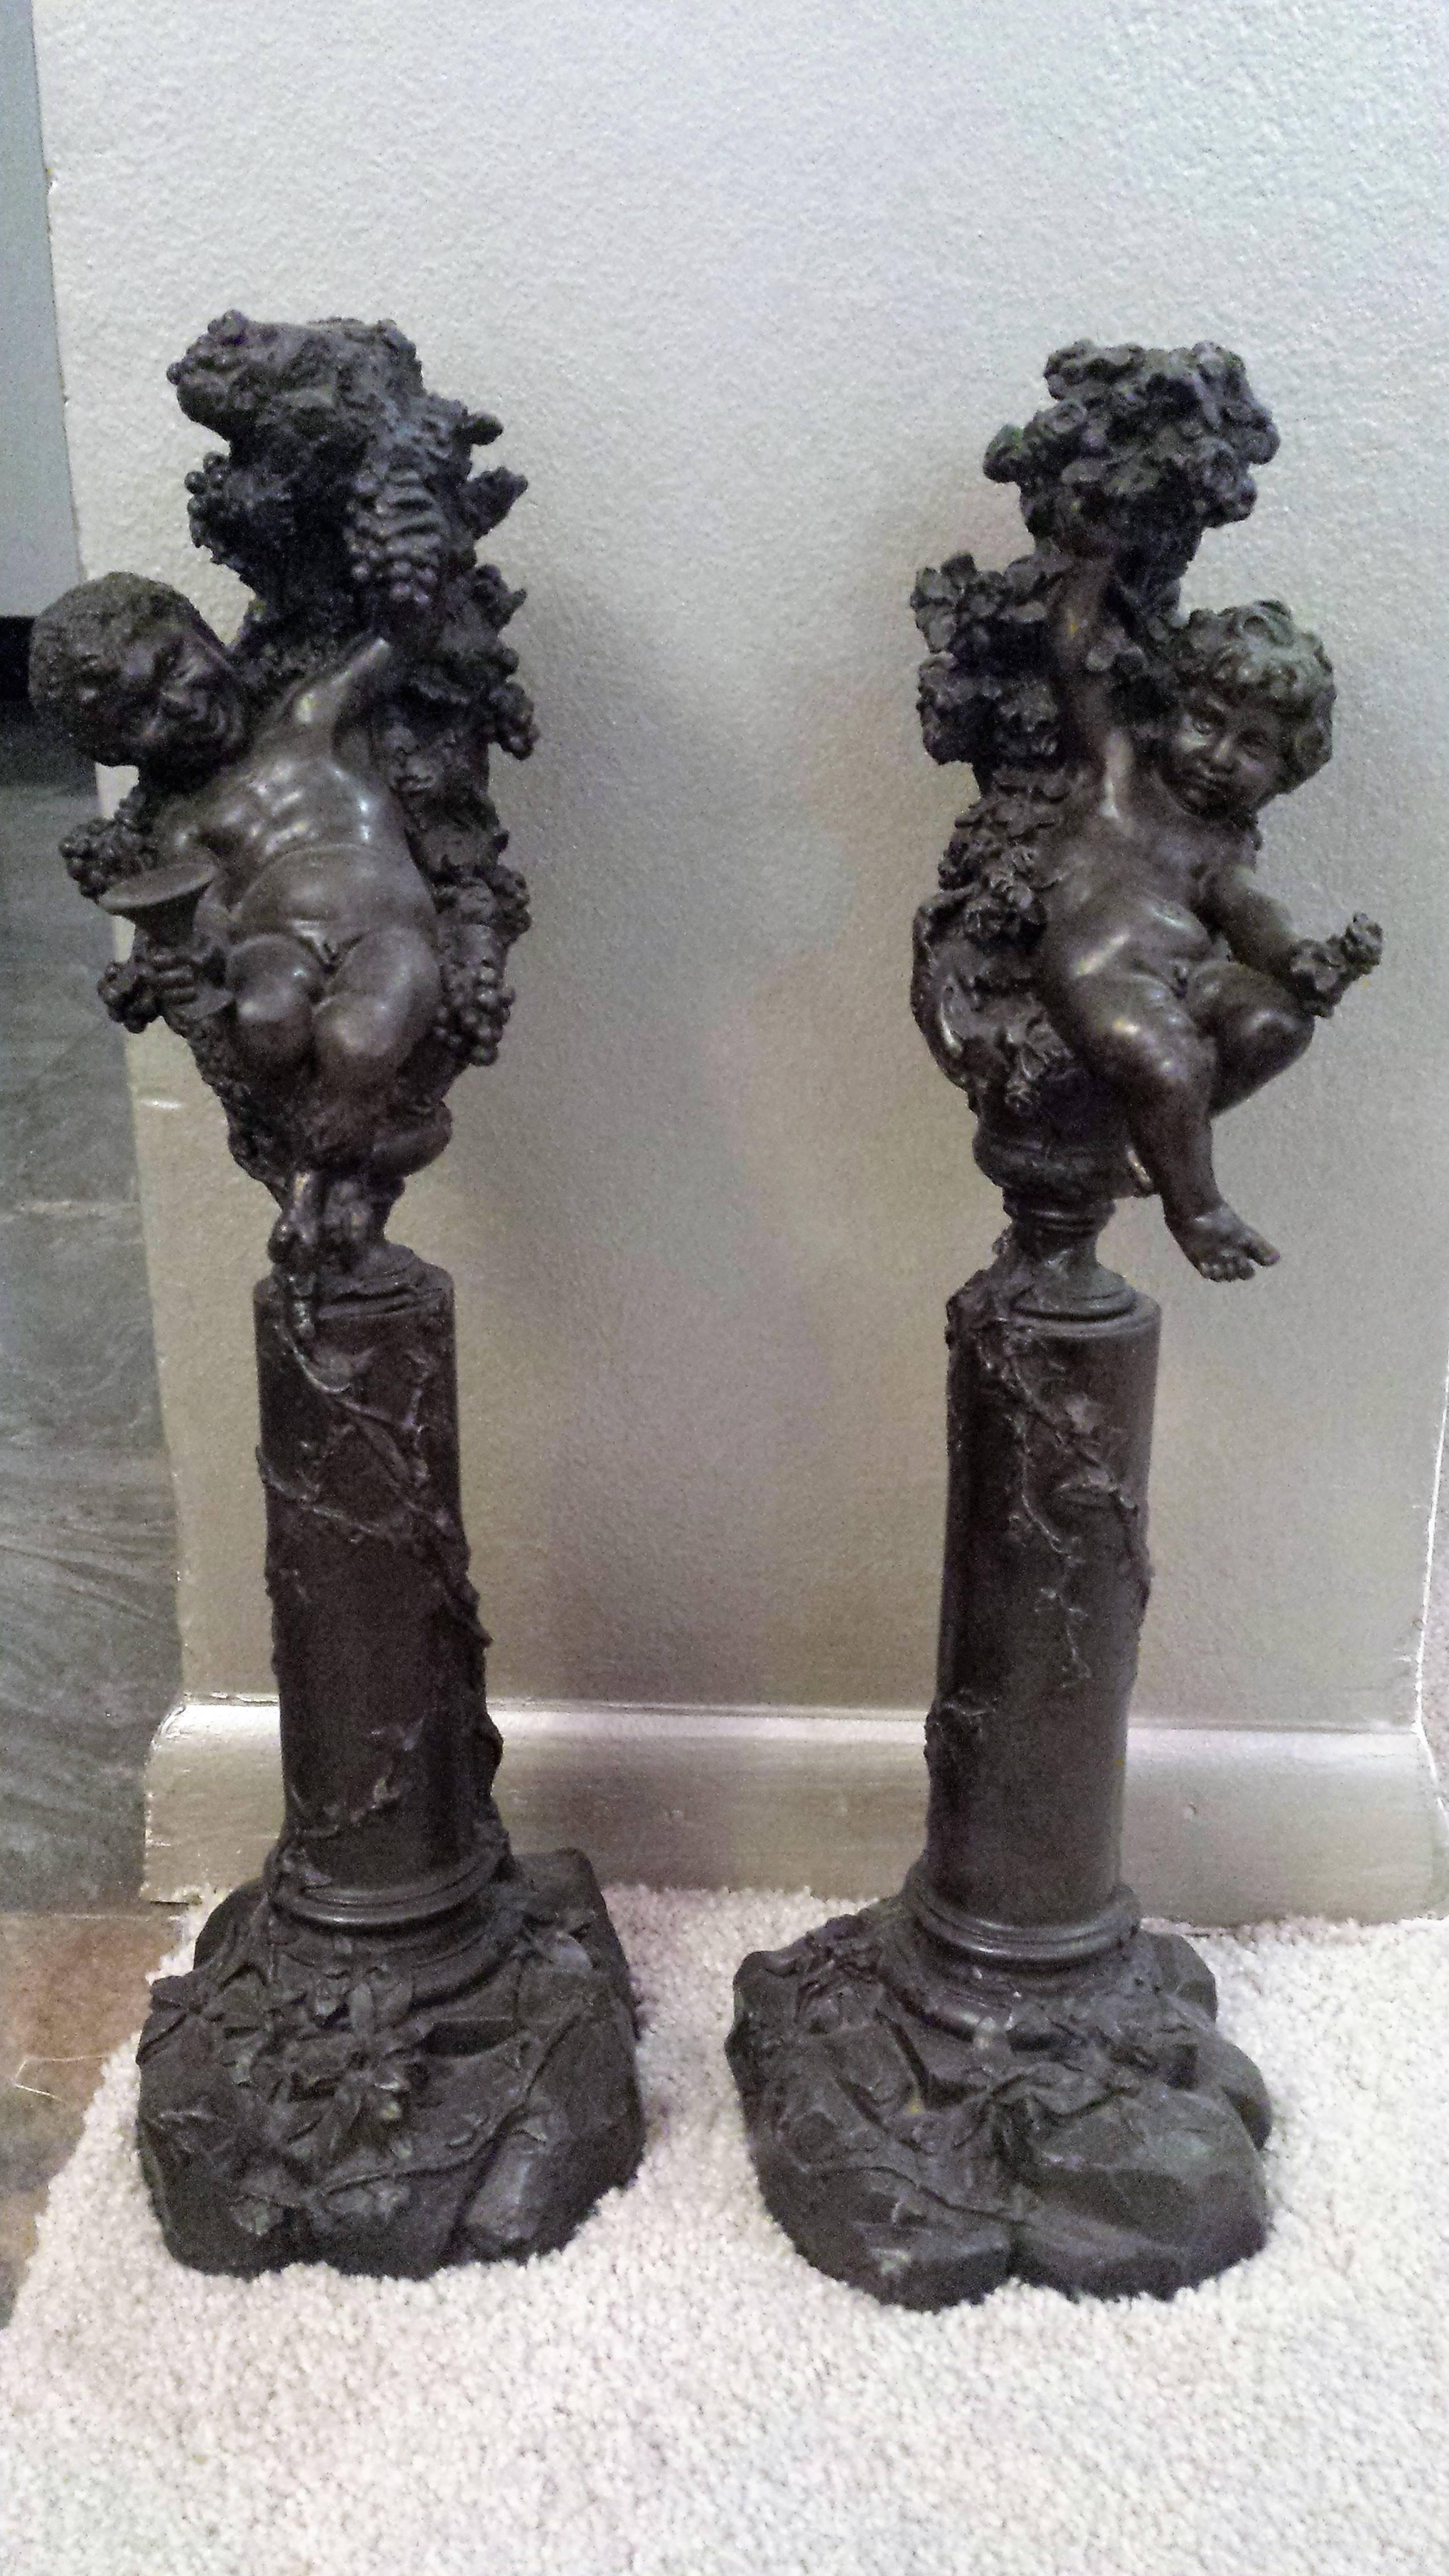 Ein hübsches Paar Bronzestatuen, die fröhliche Engelsfiguren darstellen. 
Kann als Skulptur oder als einzelner Kerzenständer verwendet werden
Die Figur des Cherubs wurde in der Kunst der Renaissance häufig verwendet und als nacktes, pummeliges